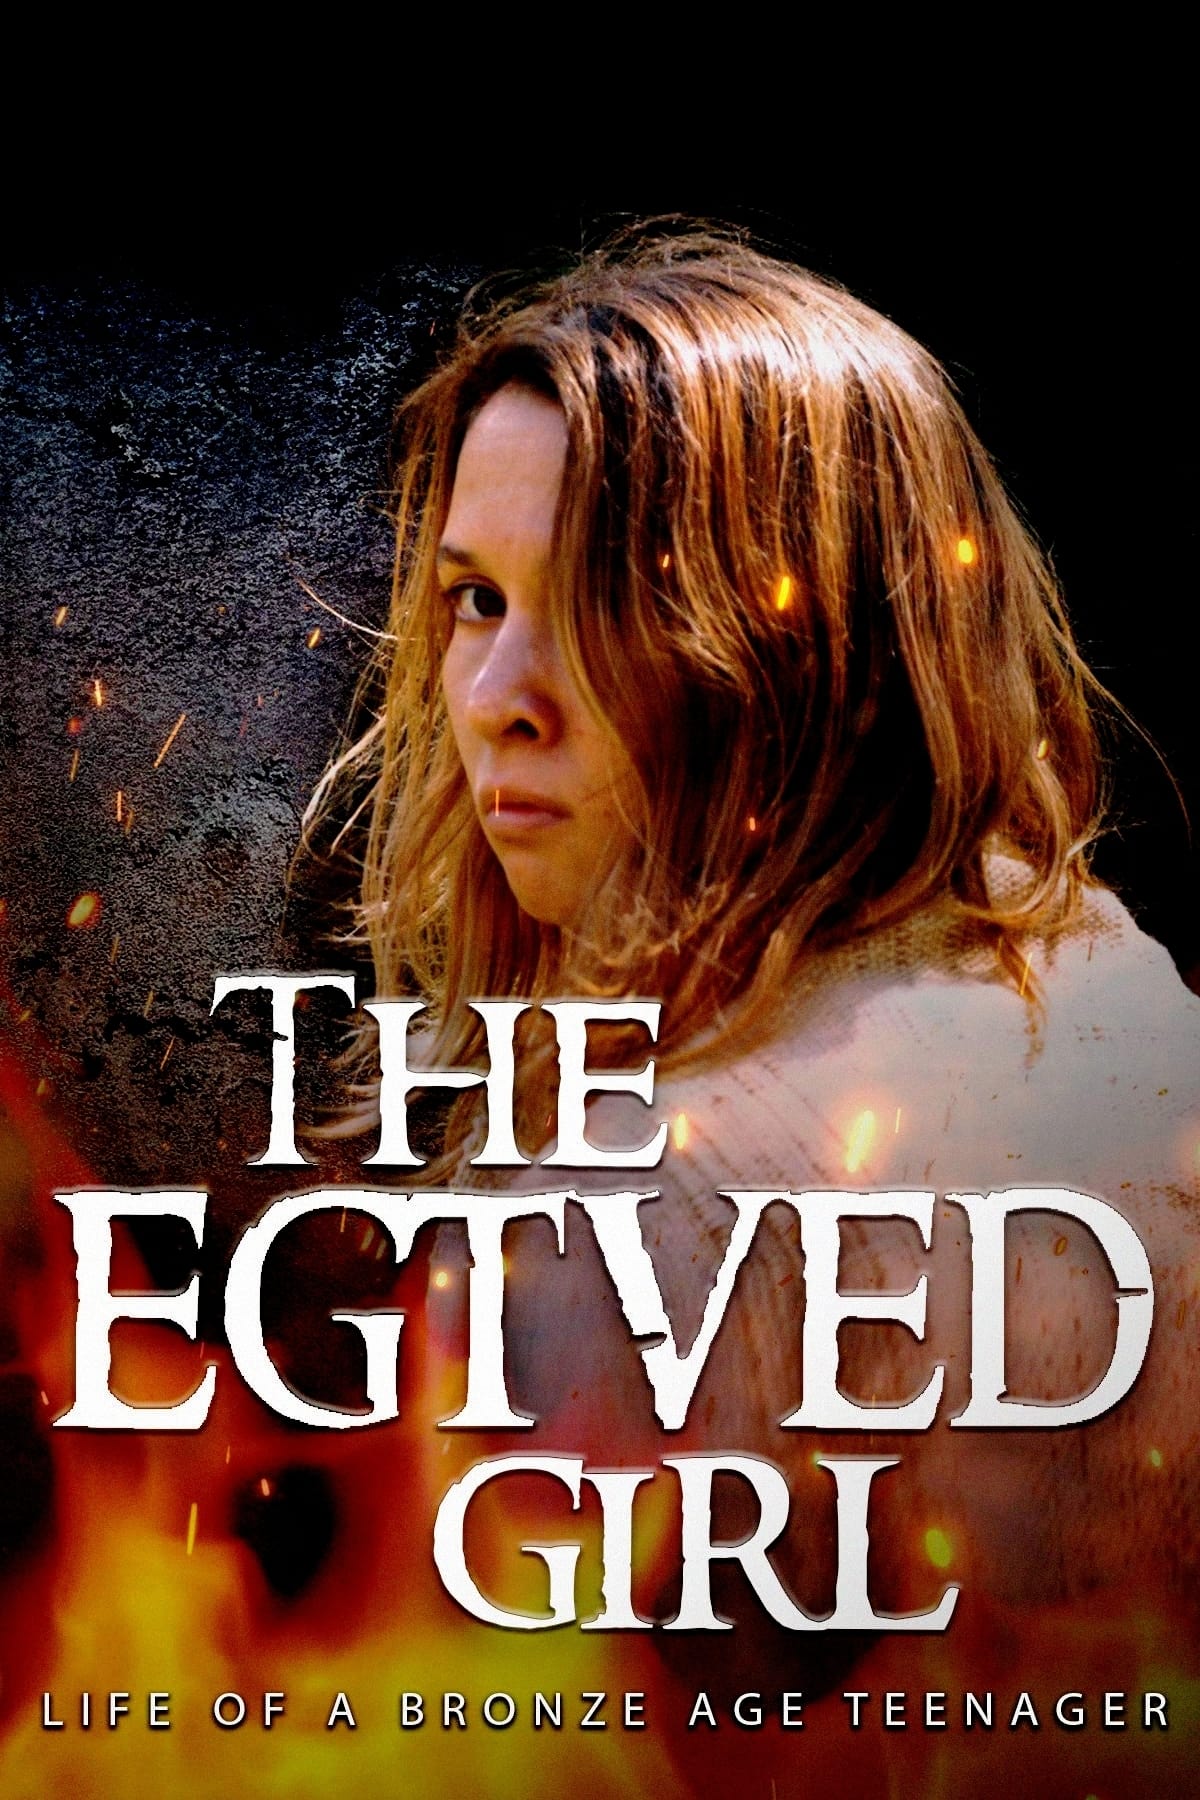 The Egtved Girl